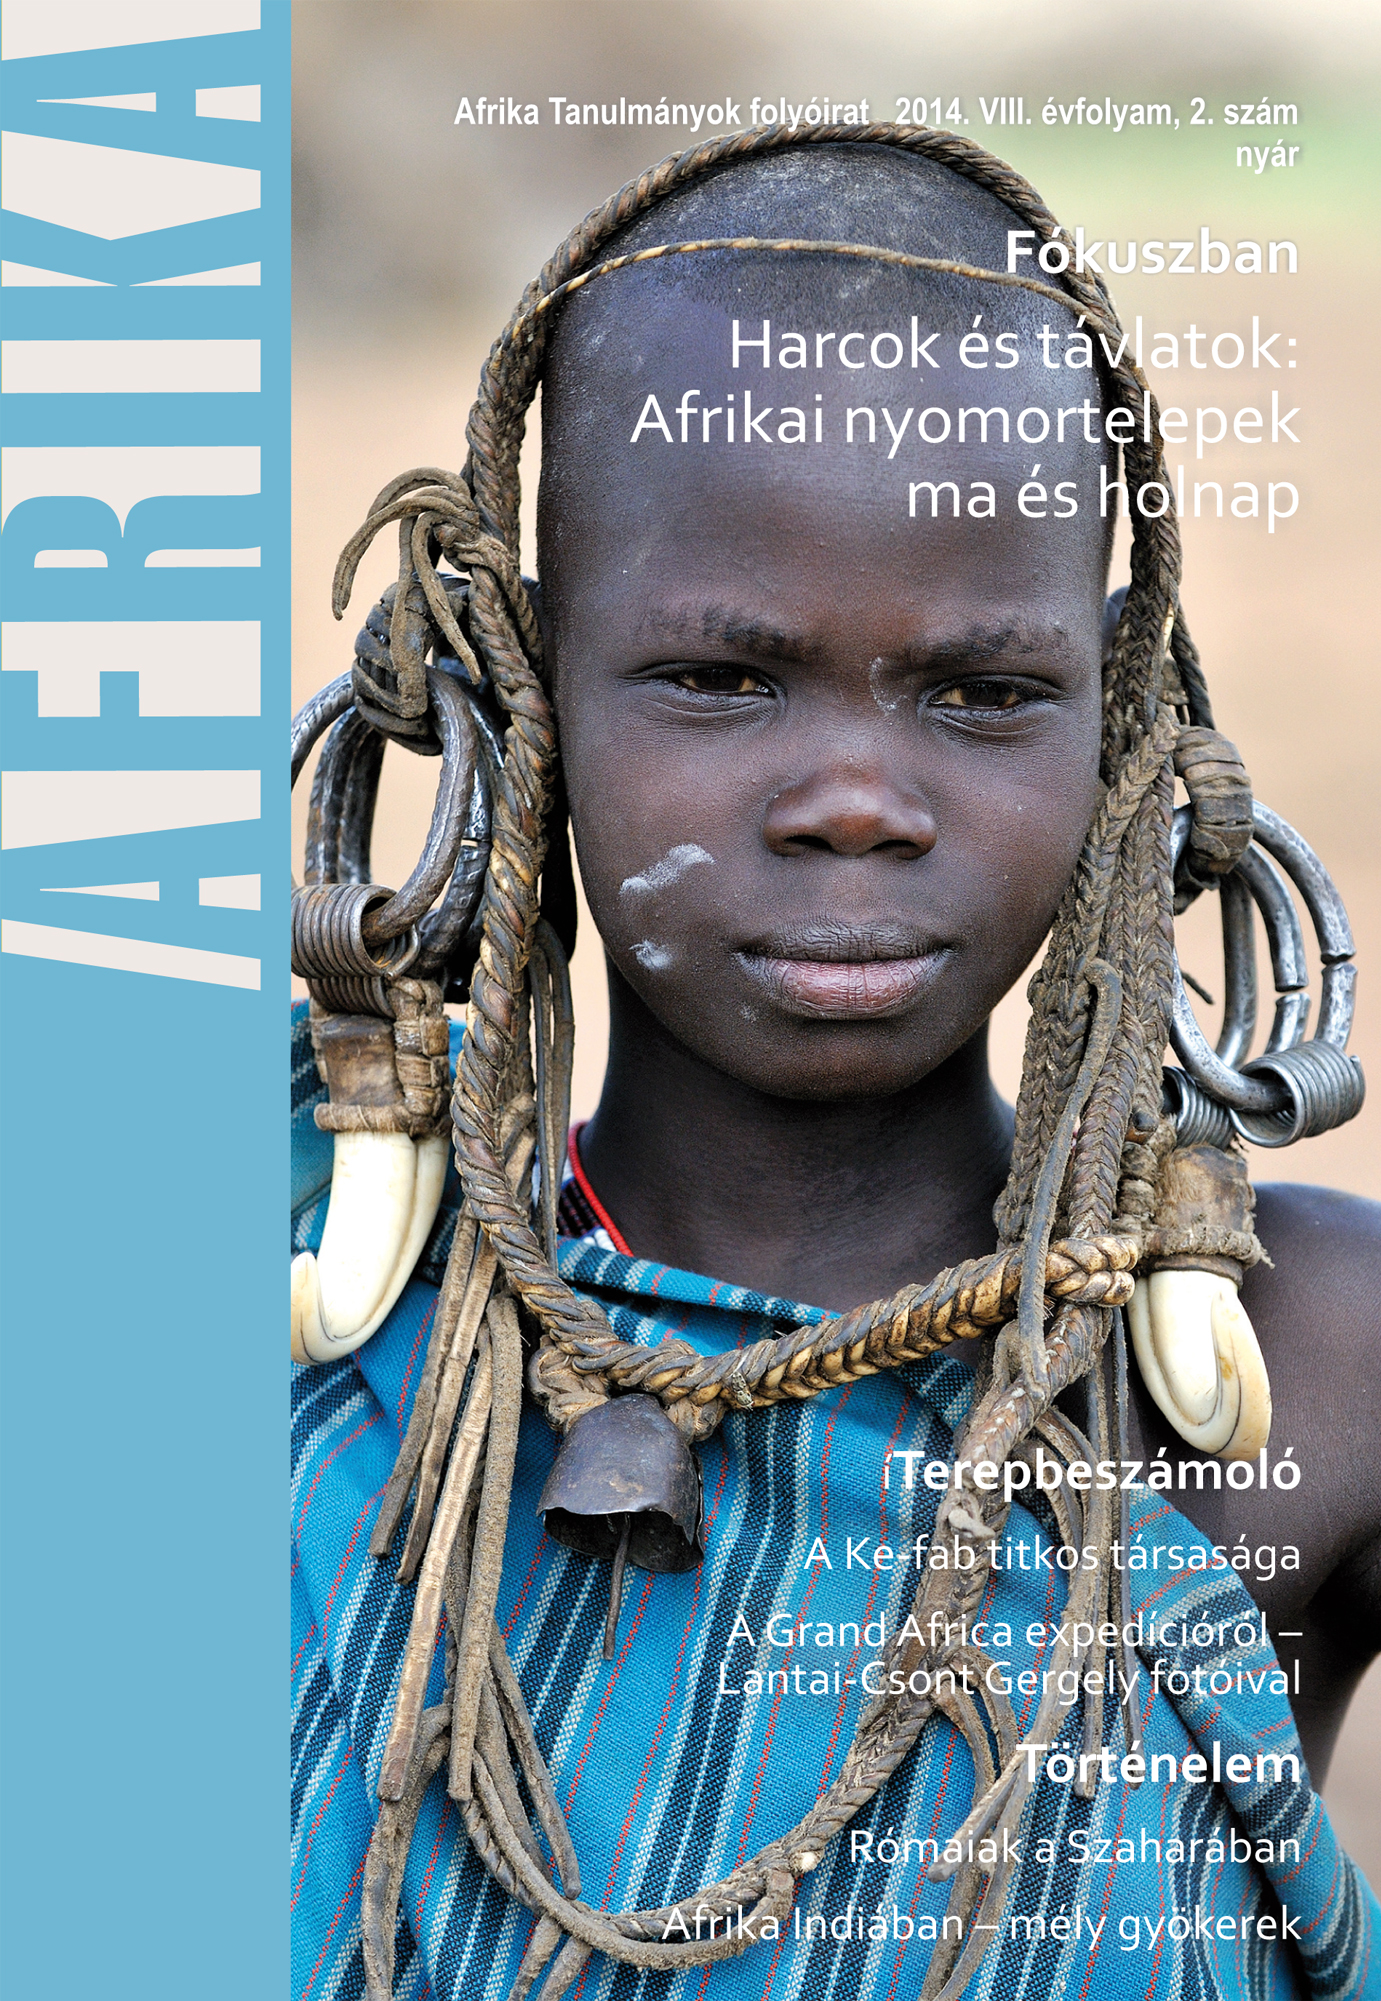 					View Évf. 8 szám 2 (2014): Fókuszban: Harcok és távlatok: Afrikai nyomortelepek ma és holnap
				